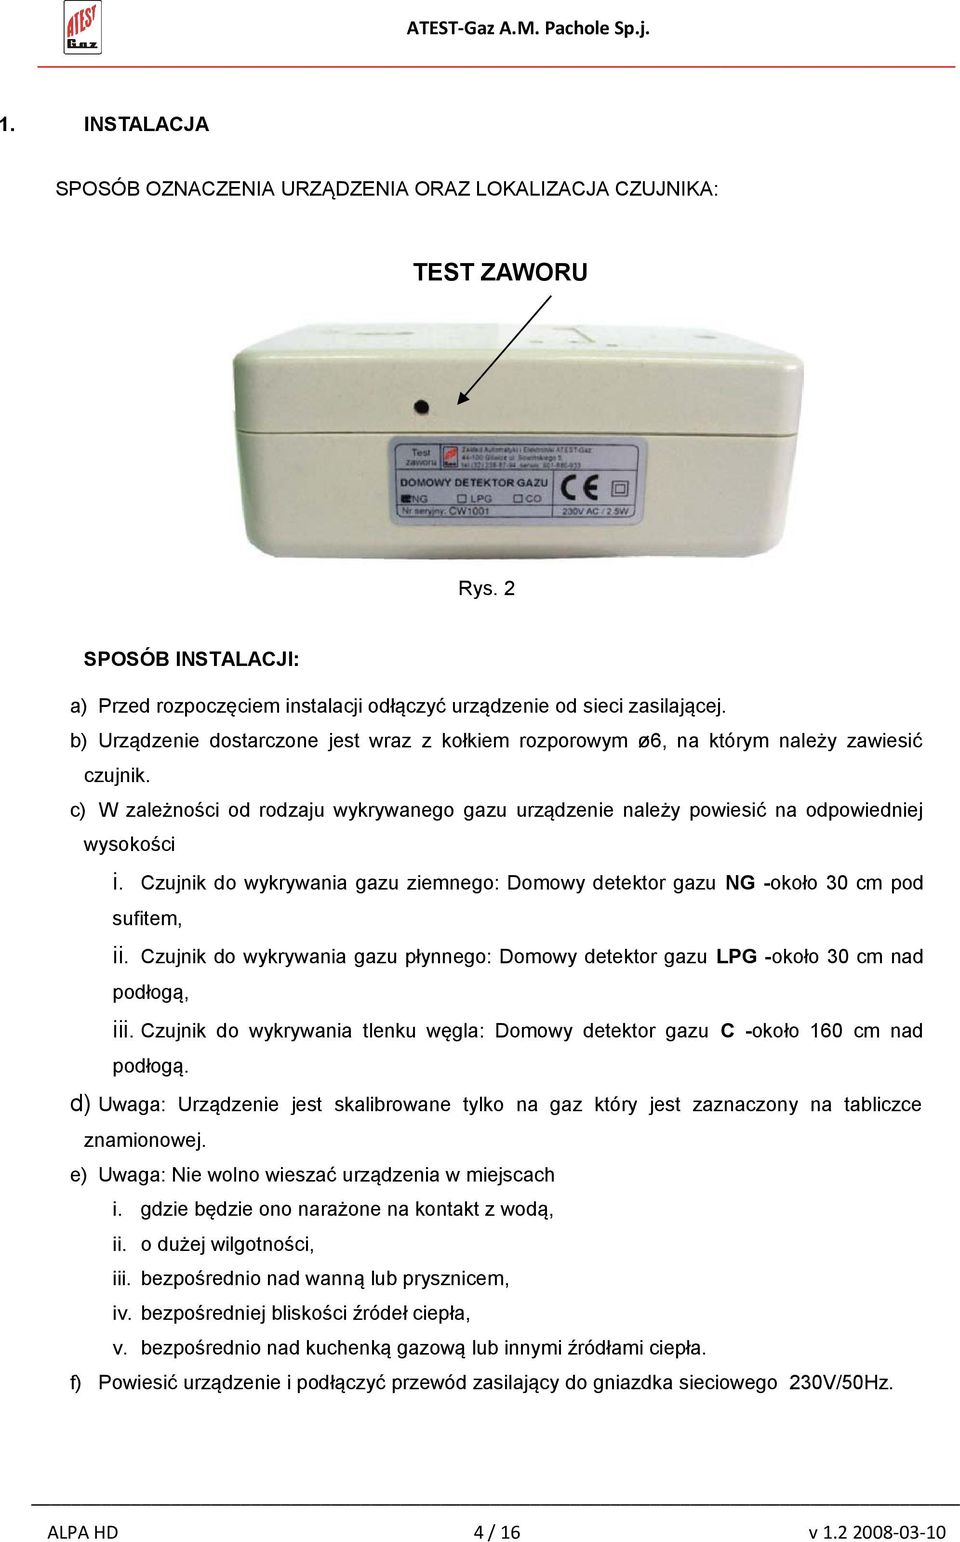 Czujnik do wykrywania gazu ziemnego: Domowy detektor gazu NG -około 30 cm pod sufitem, ii. Czujnik do wykrywania gazu płynnego: Domowy detektor gazu LPG -około 30 cm nad podłogą, iii.